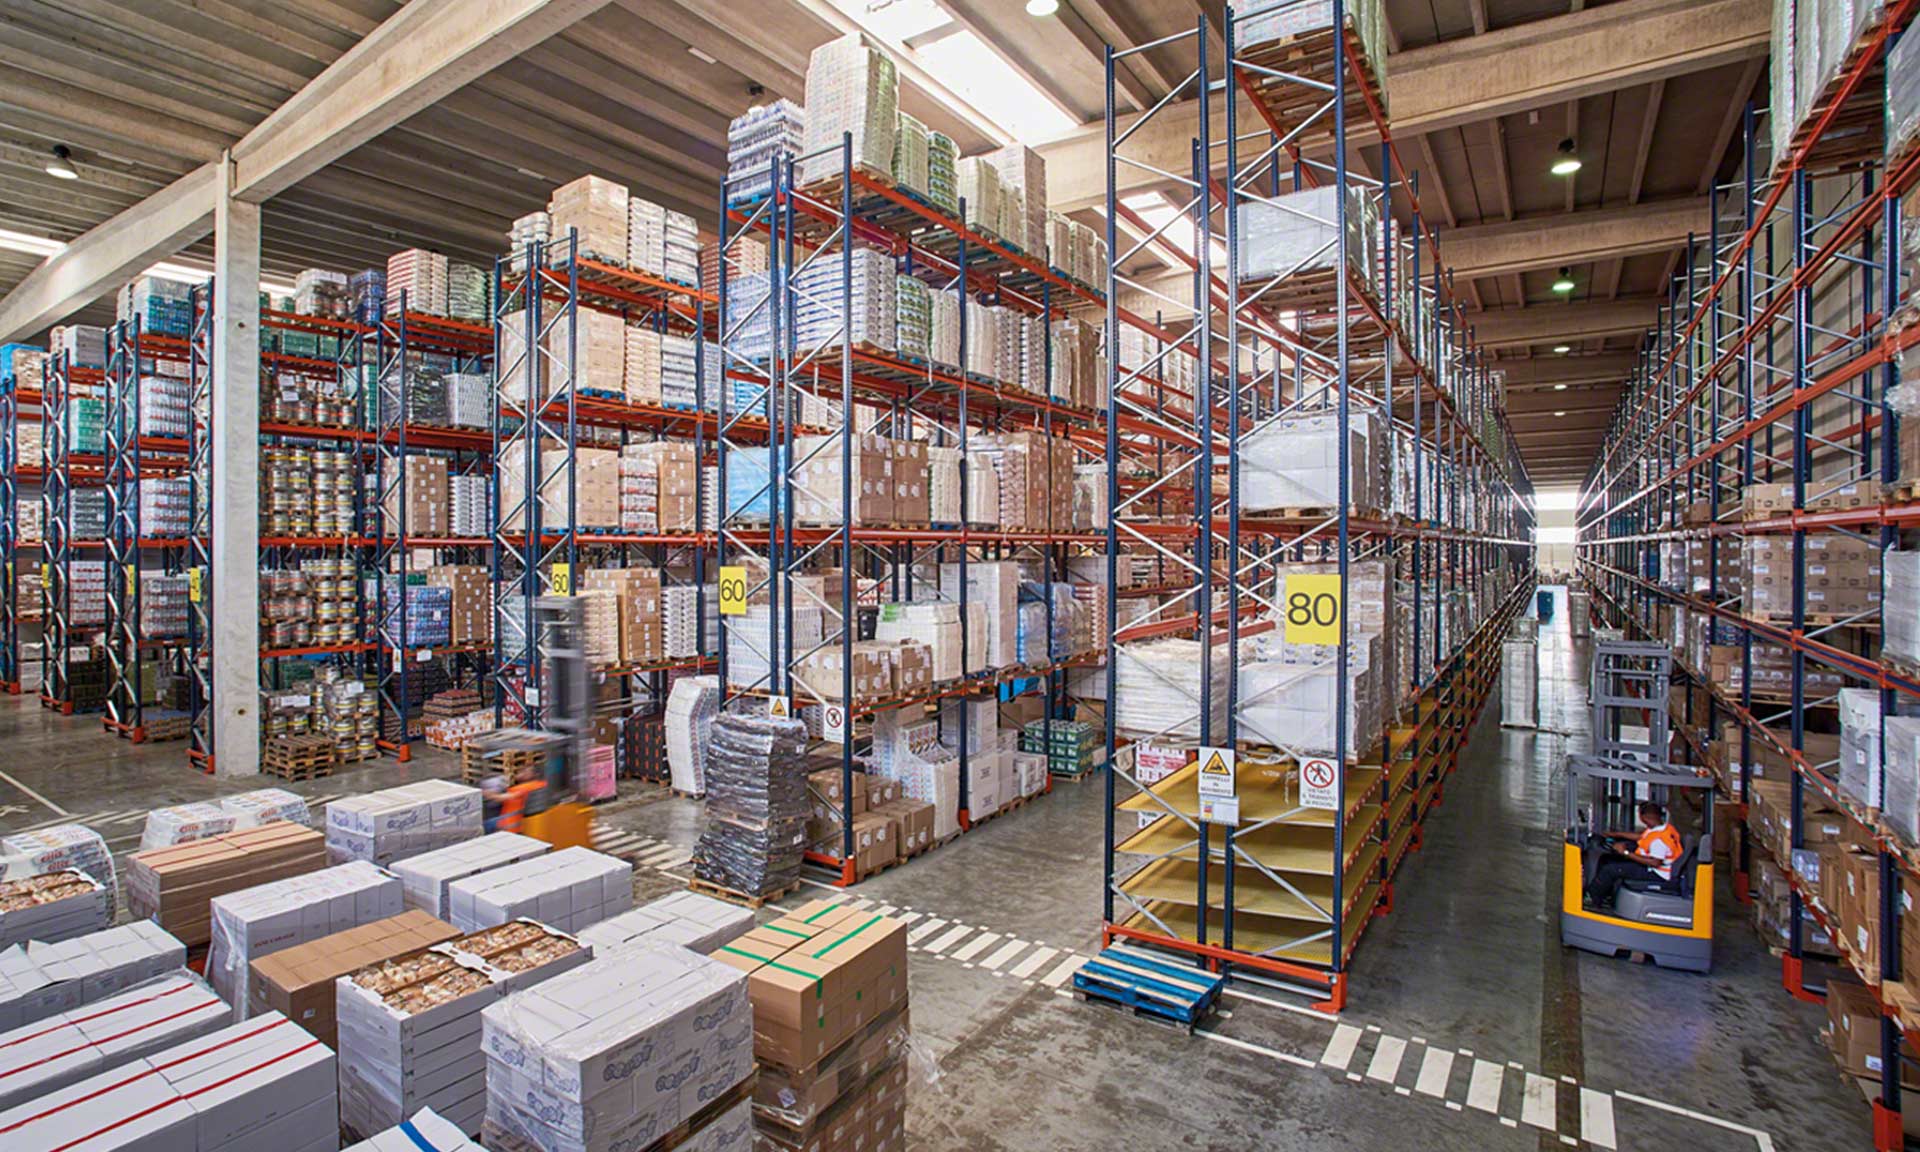 Les techniques de stockage sont des stratégies utilisées pour définir les critères d'emplacement des marchandises dans l'entrepôt